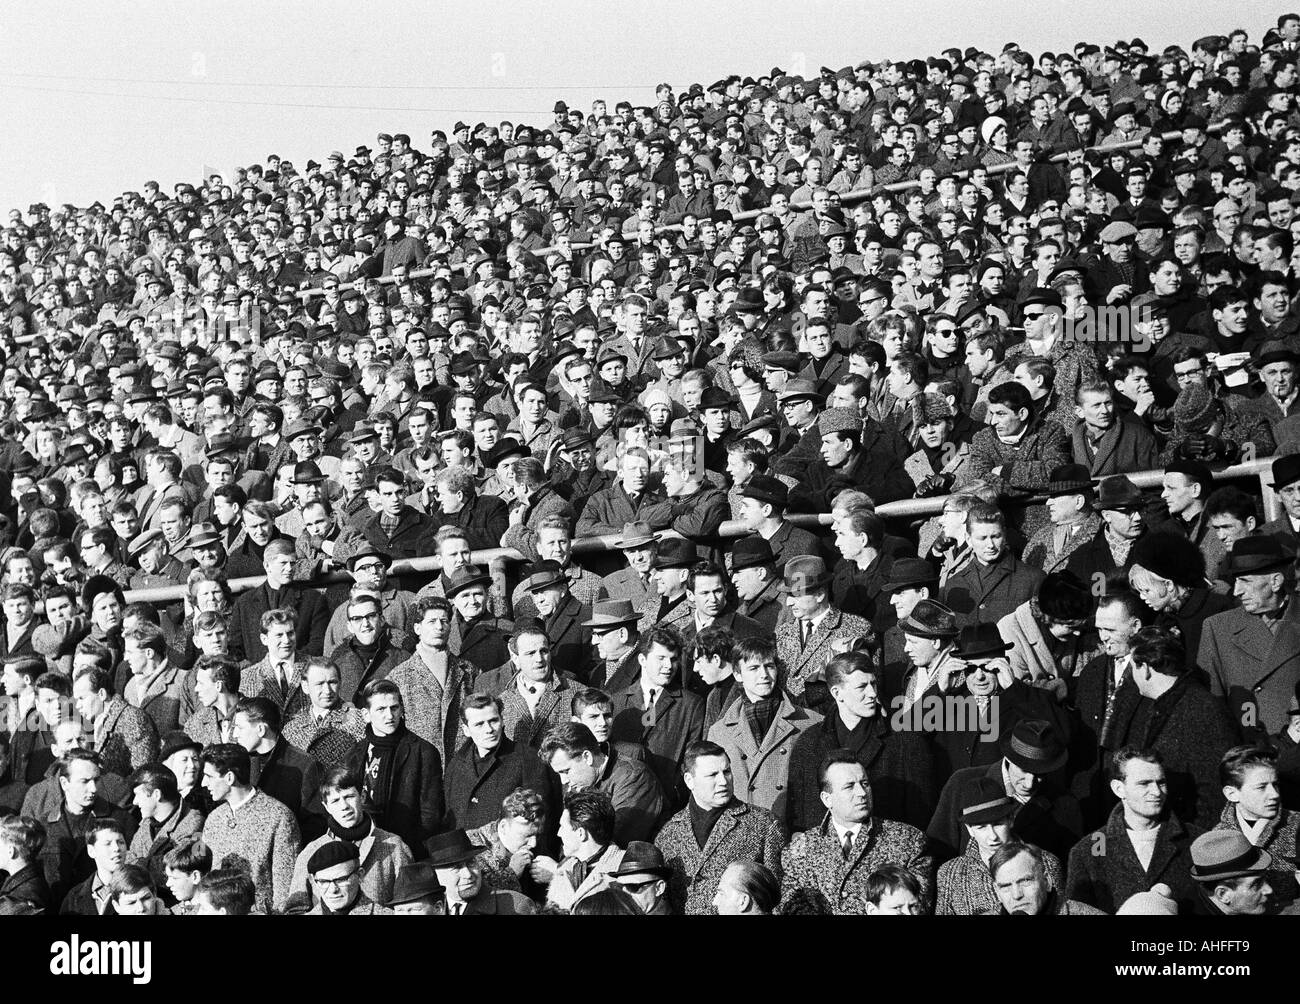 Fußball, Bundesliga, 1965/1966, Borussia Moenchengladbach gegen TSV 1860 München 1:1, Boekelberg Stadion, Zuschauer, komplett volle Stadion Stockfoto